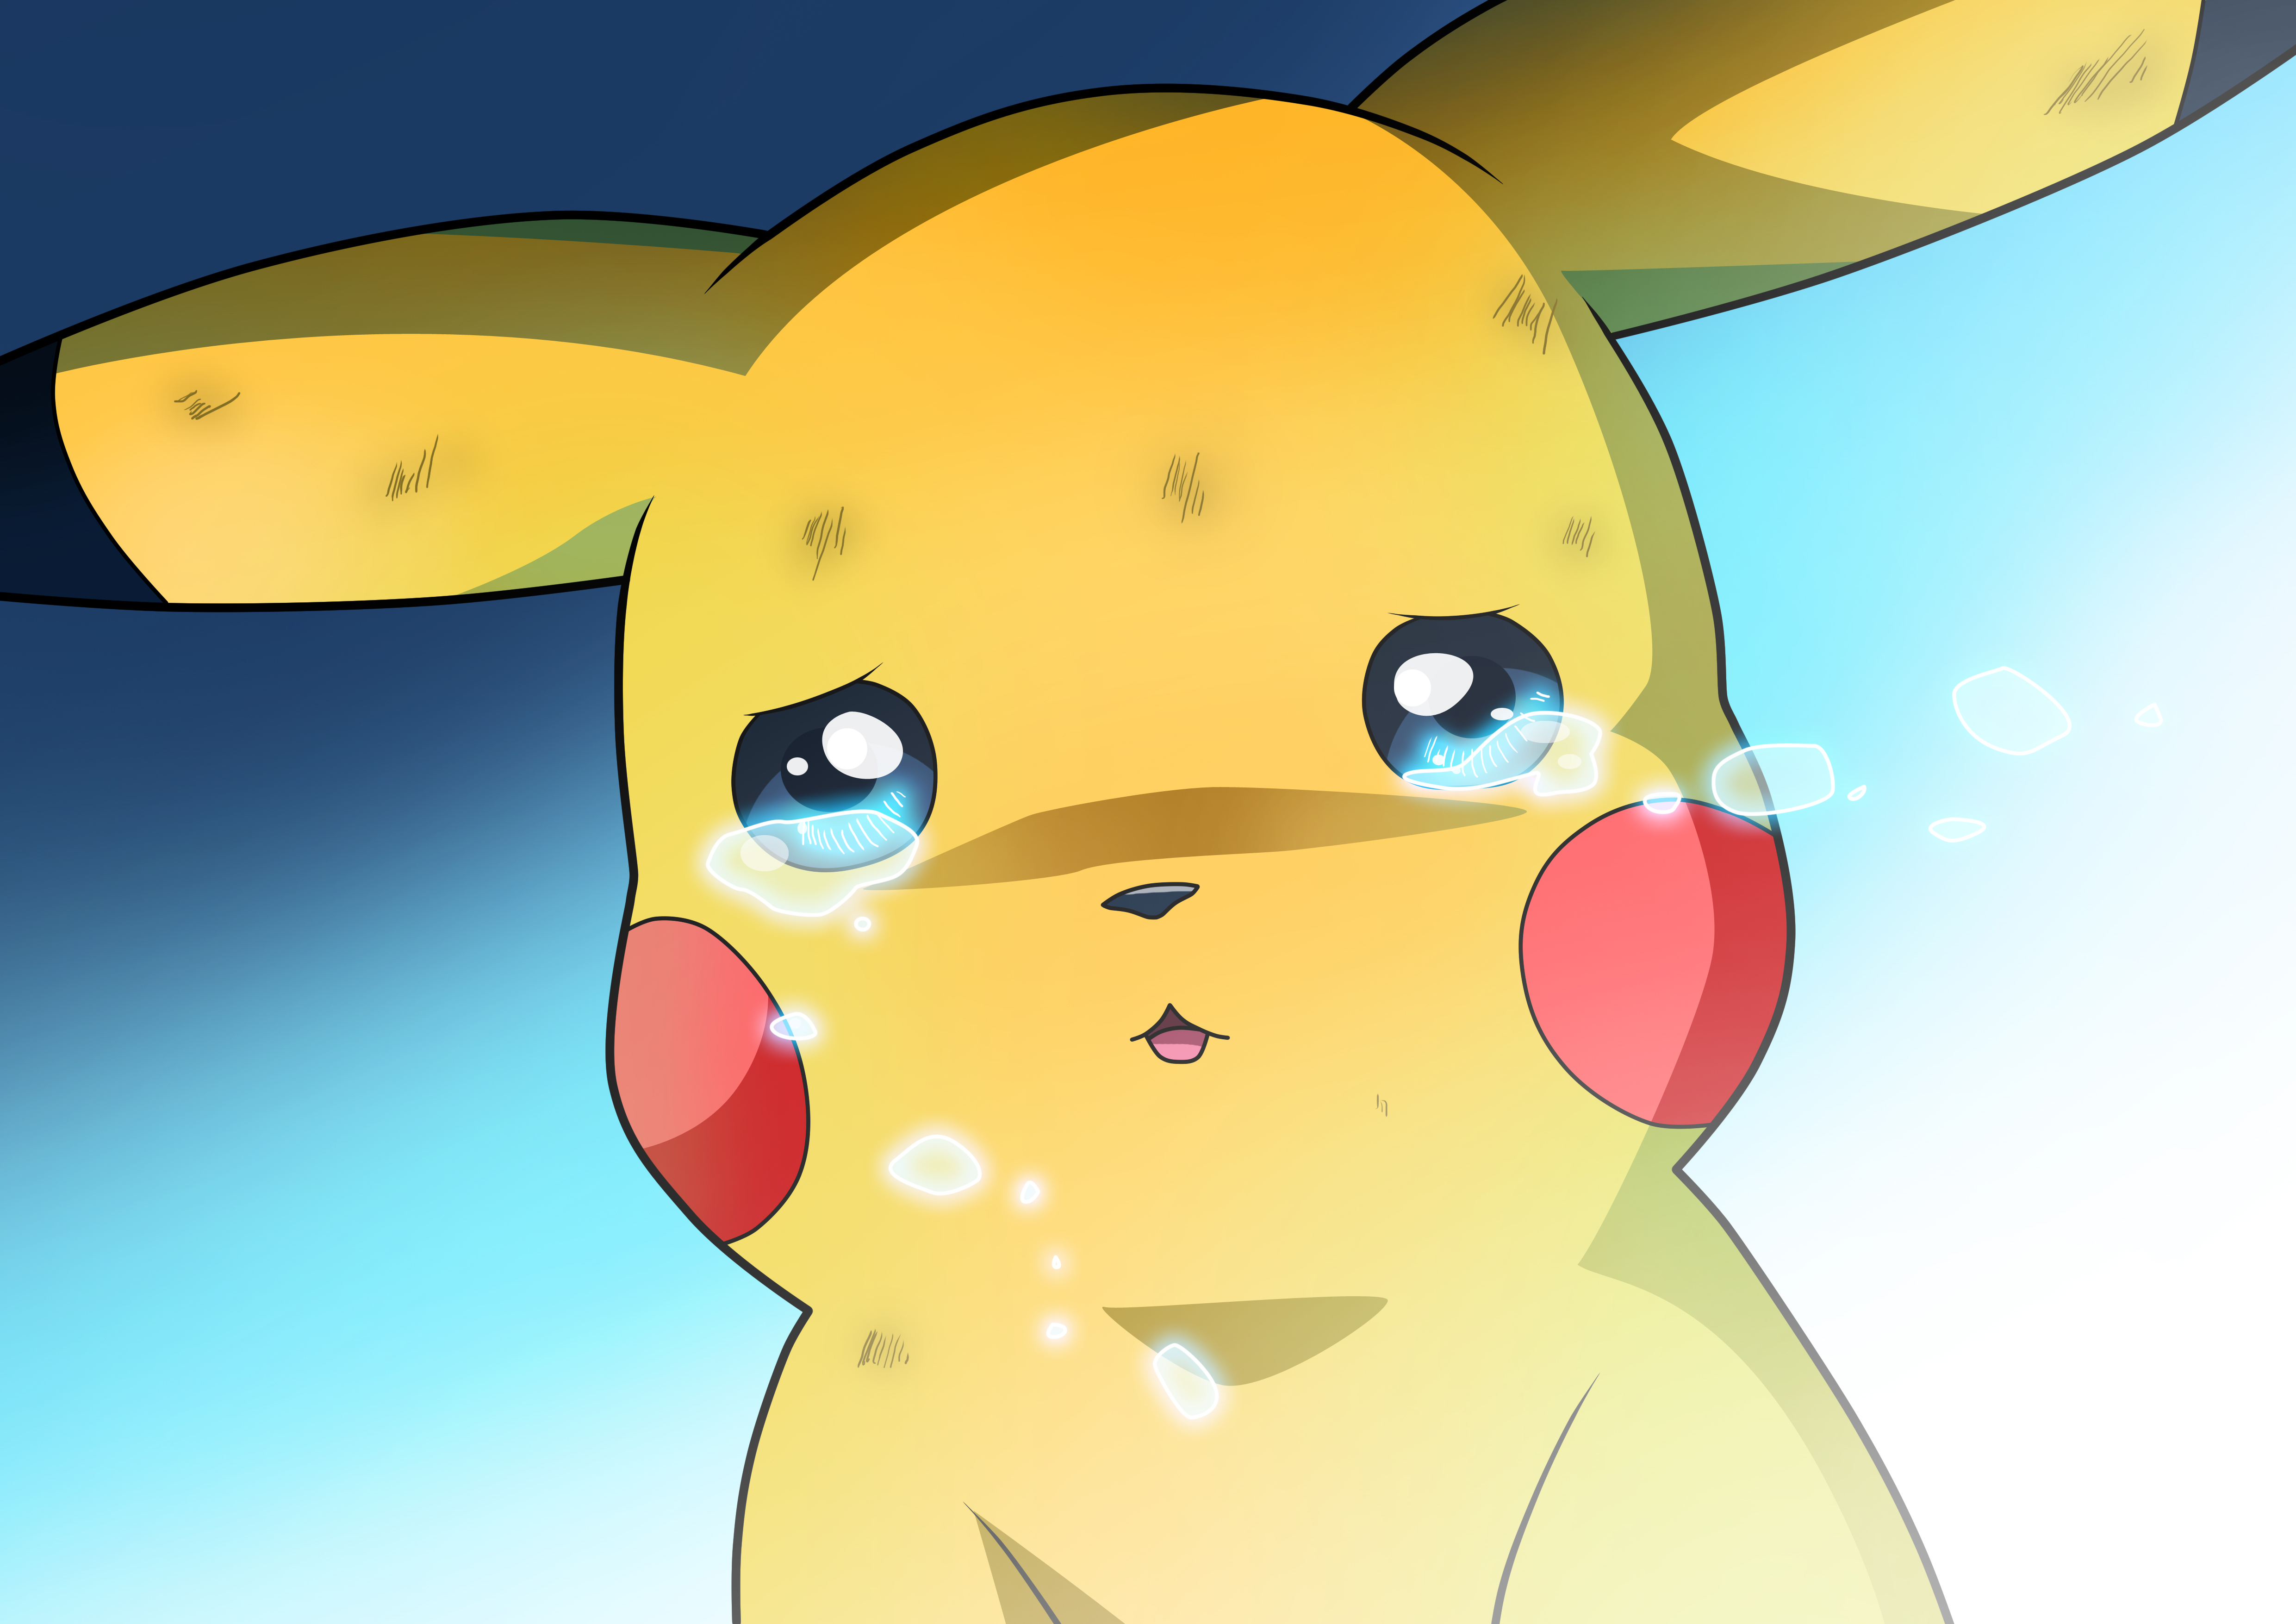 Crying Pikachu by Tom Skender